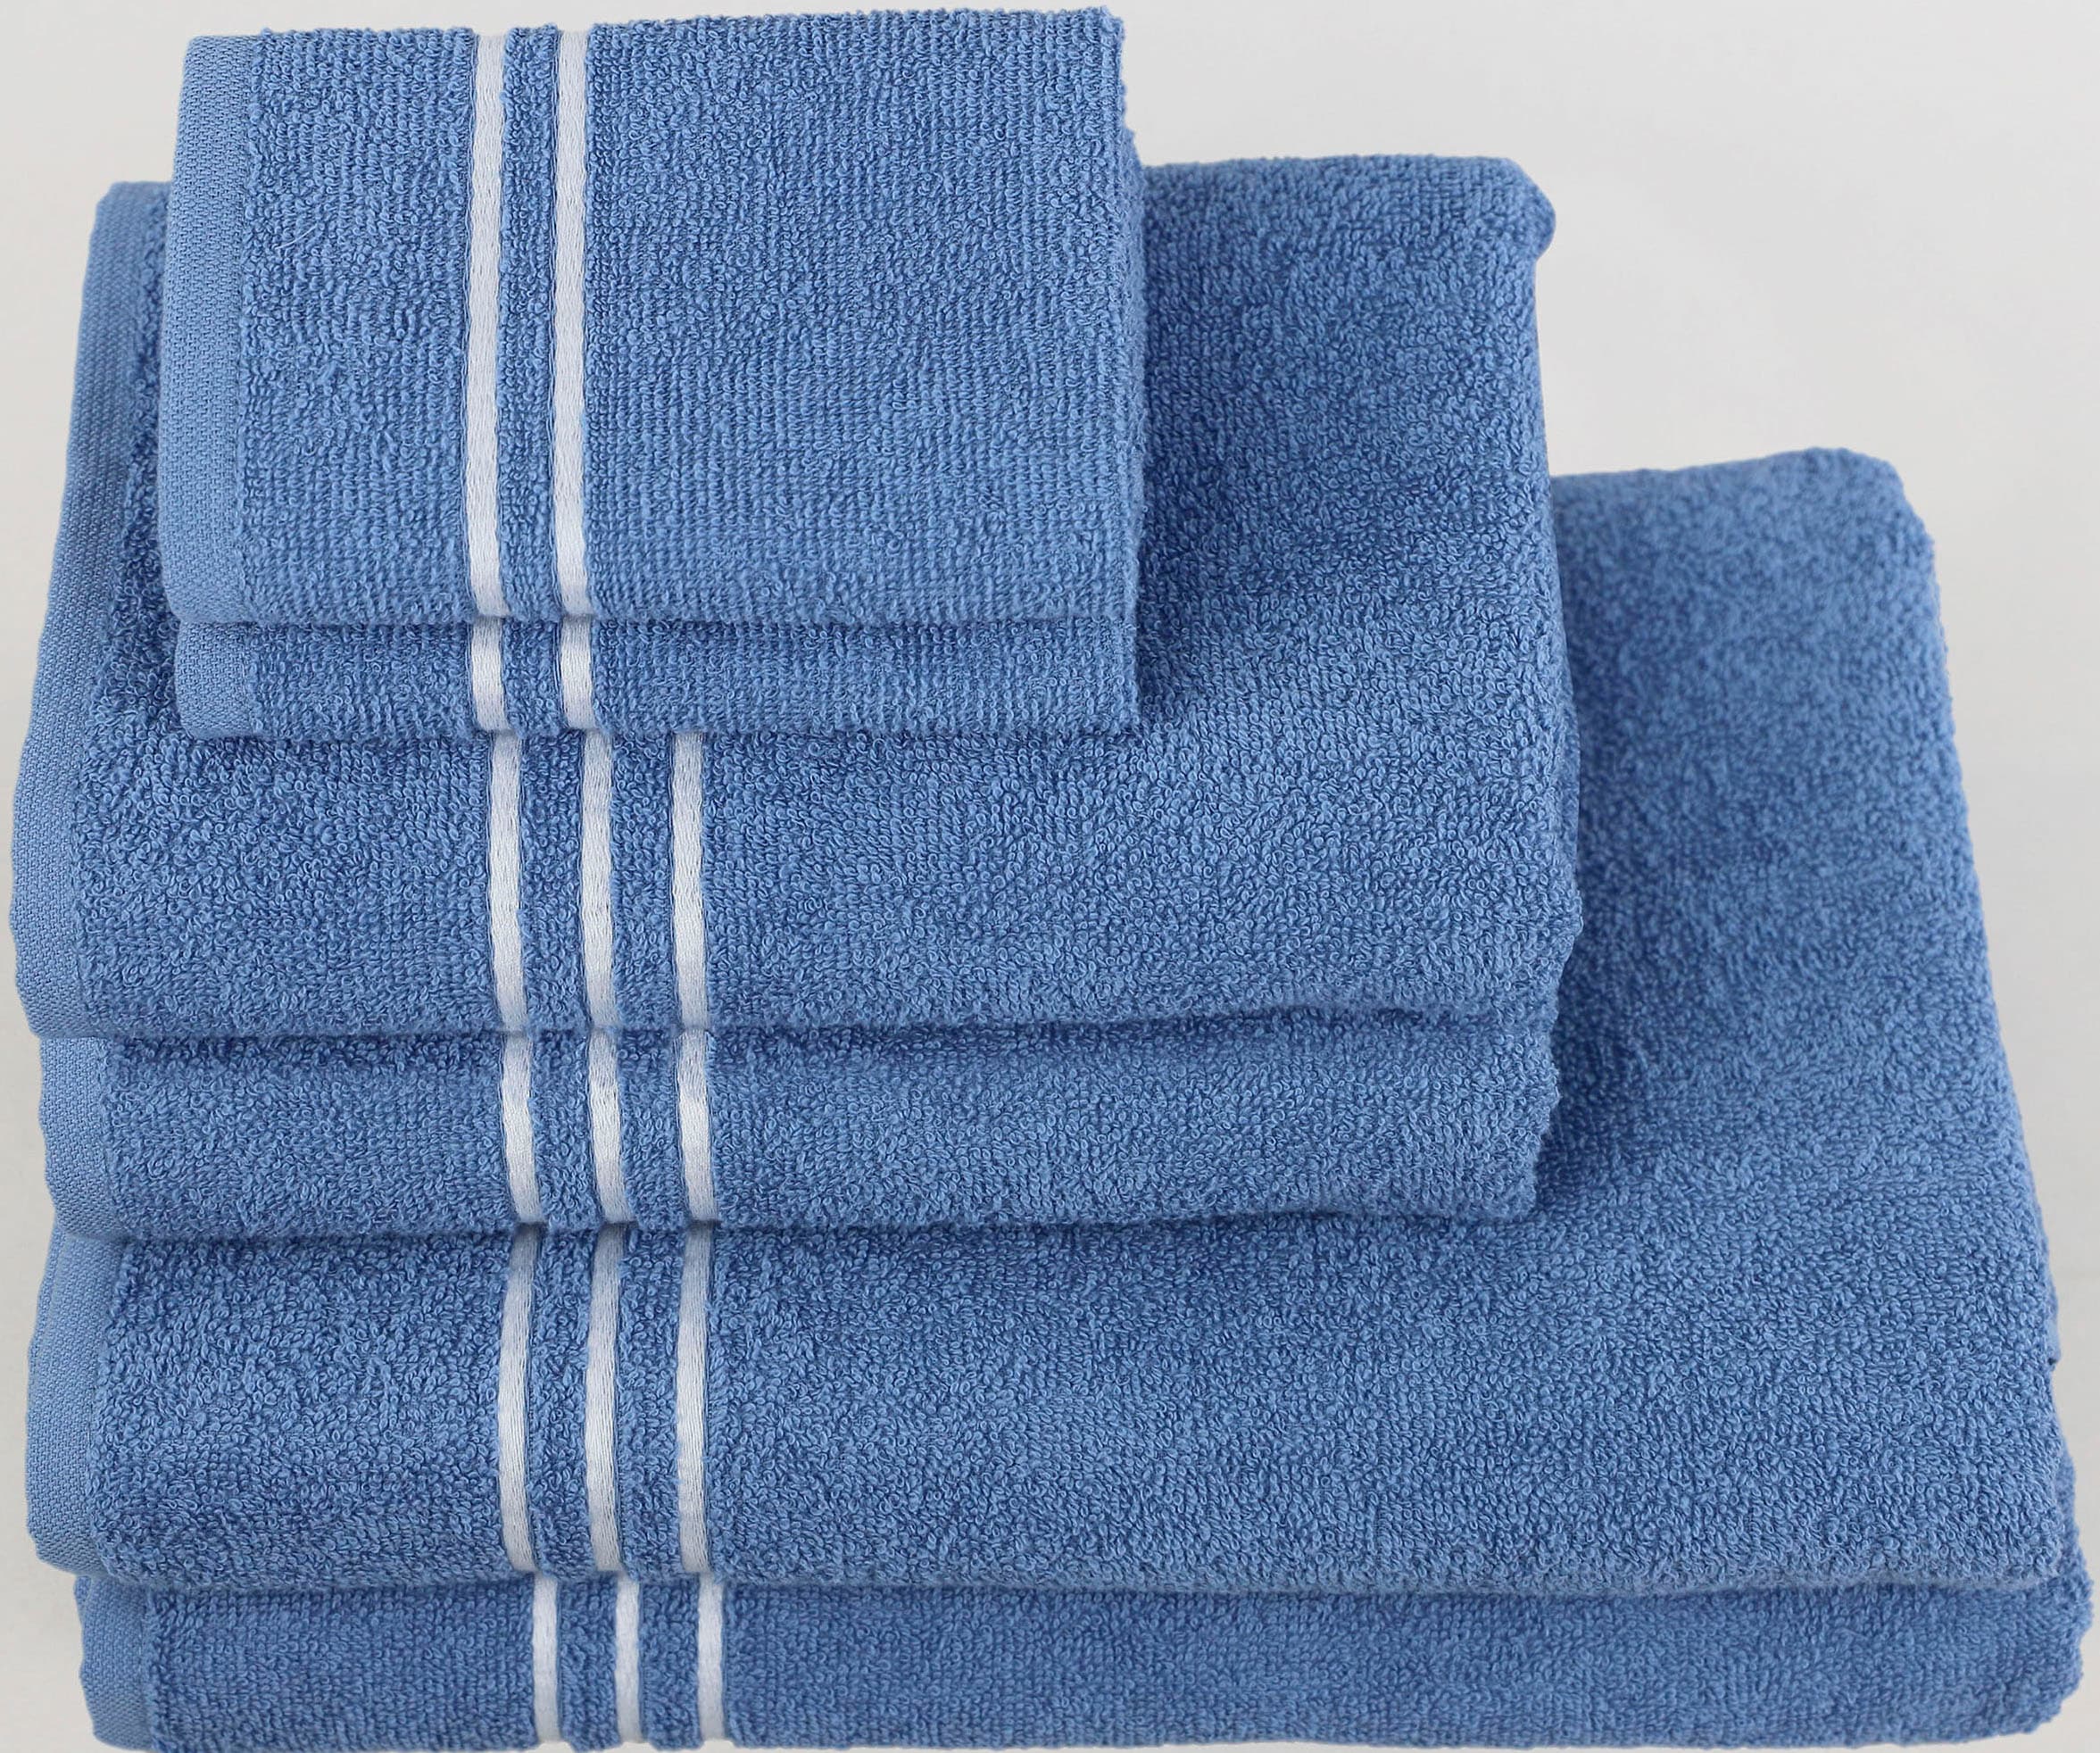 KangaROOS Handtuch Set »Dalia«, Set, 6 tlg., Walkfrottier, mit  Streifenbordüre, einfarbiges Handtuch-Set aus 100% Baumwolle online kaufen | Handtuch-Sets